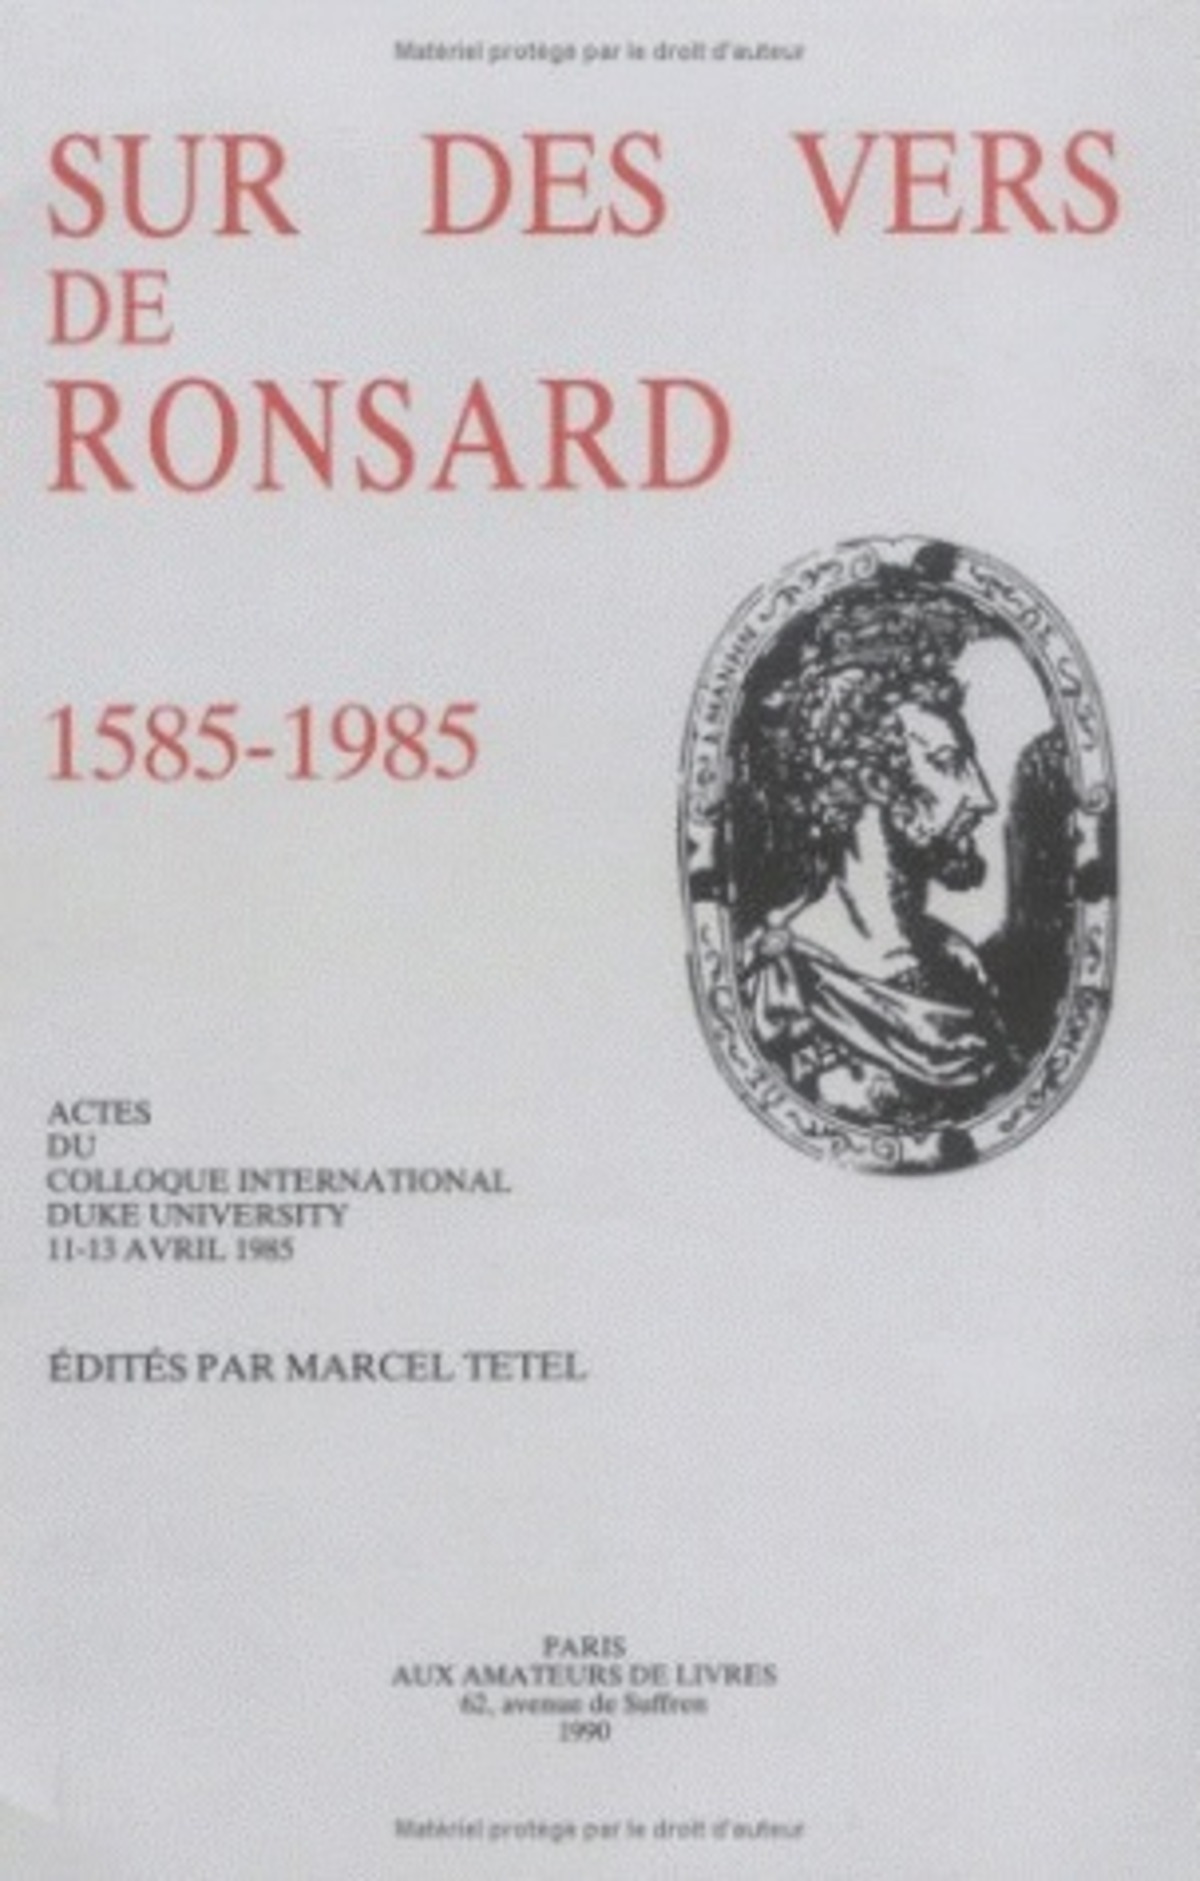 Sur des vers de Ronsard, 1585-1985